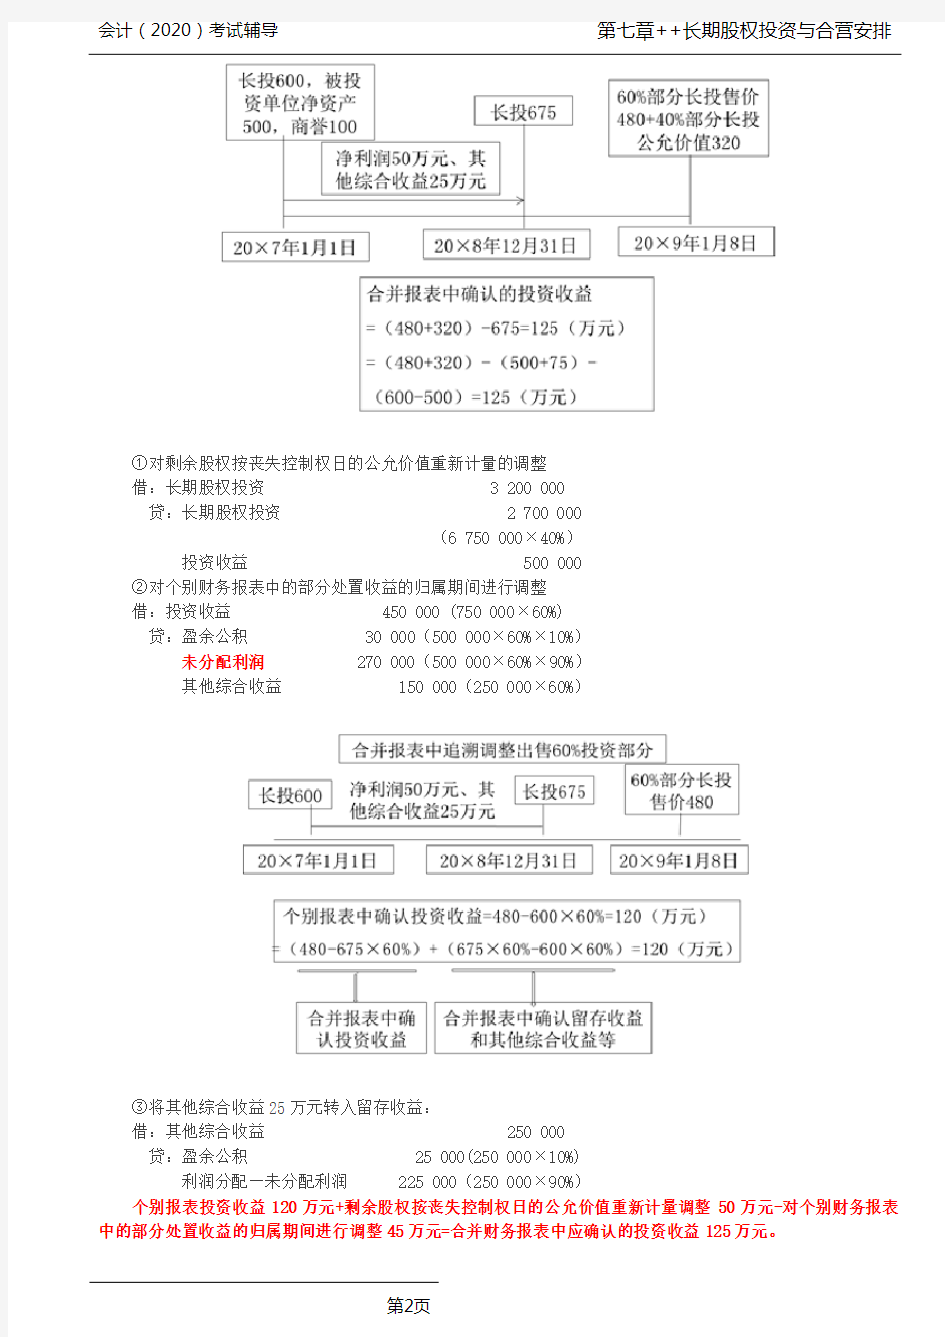 CPA 会计 第53讲_长期股权投资核算方法的转换(2)